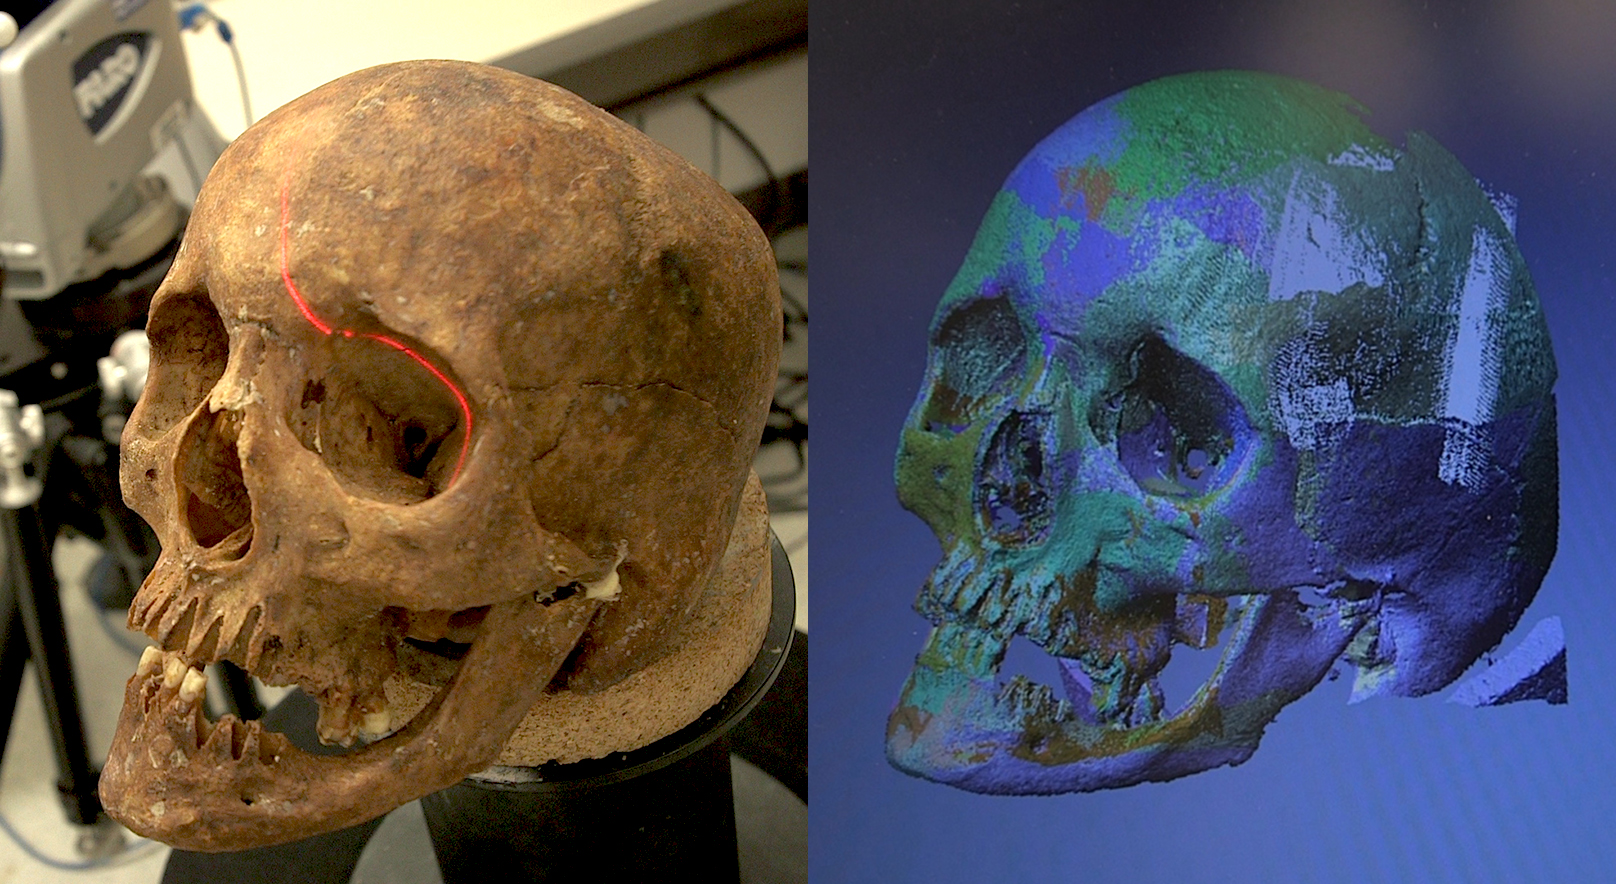 Skull and Digital Scan of Skull